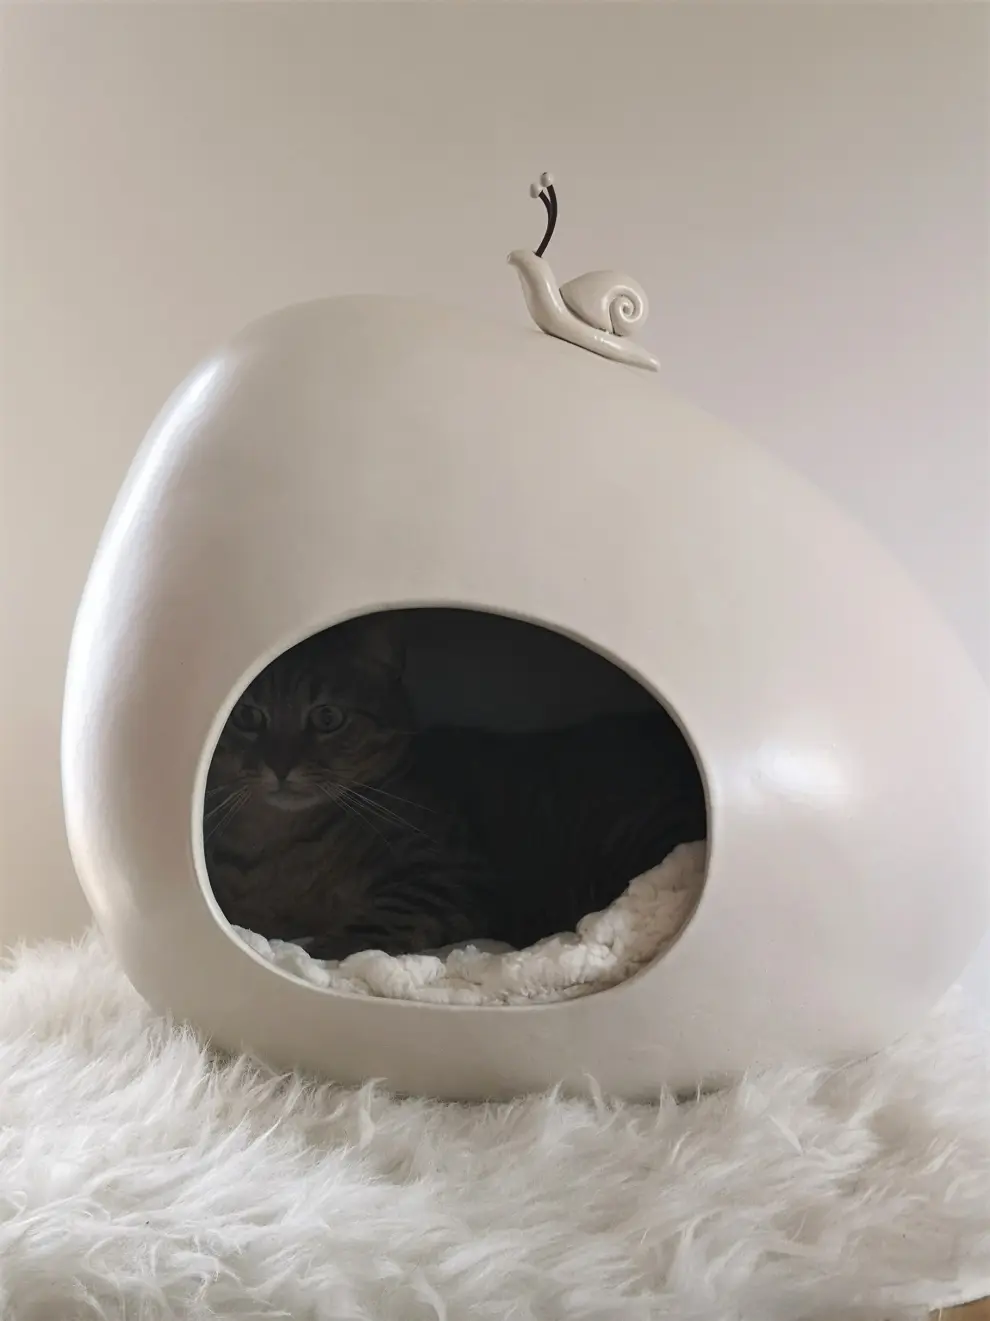 Casa de cerámica para gatos.